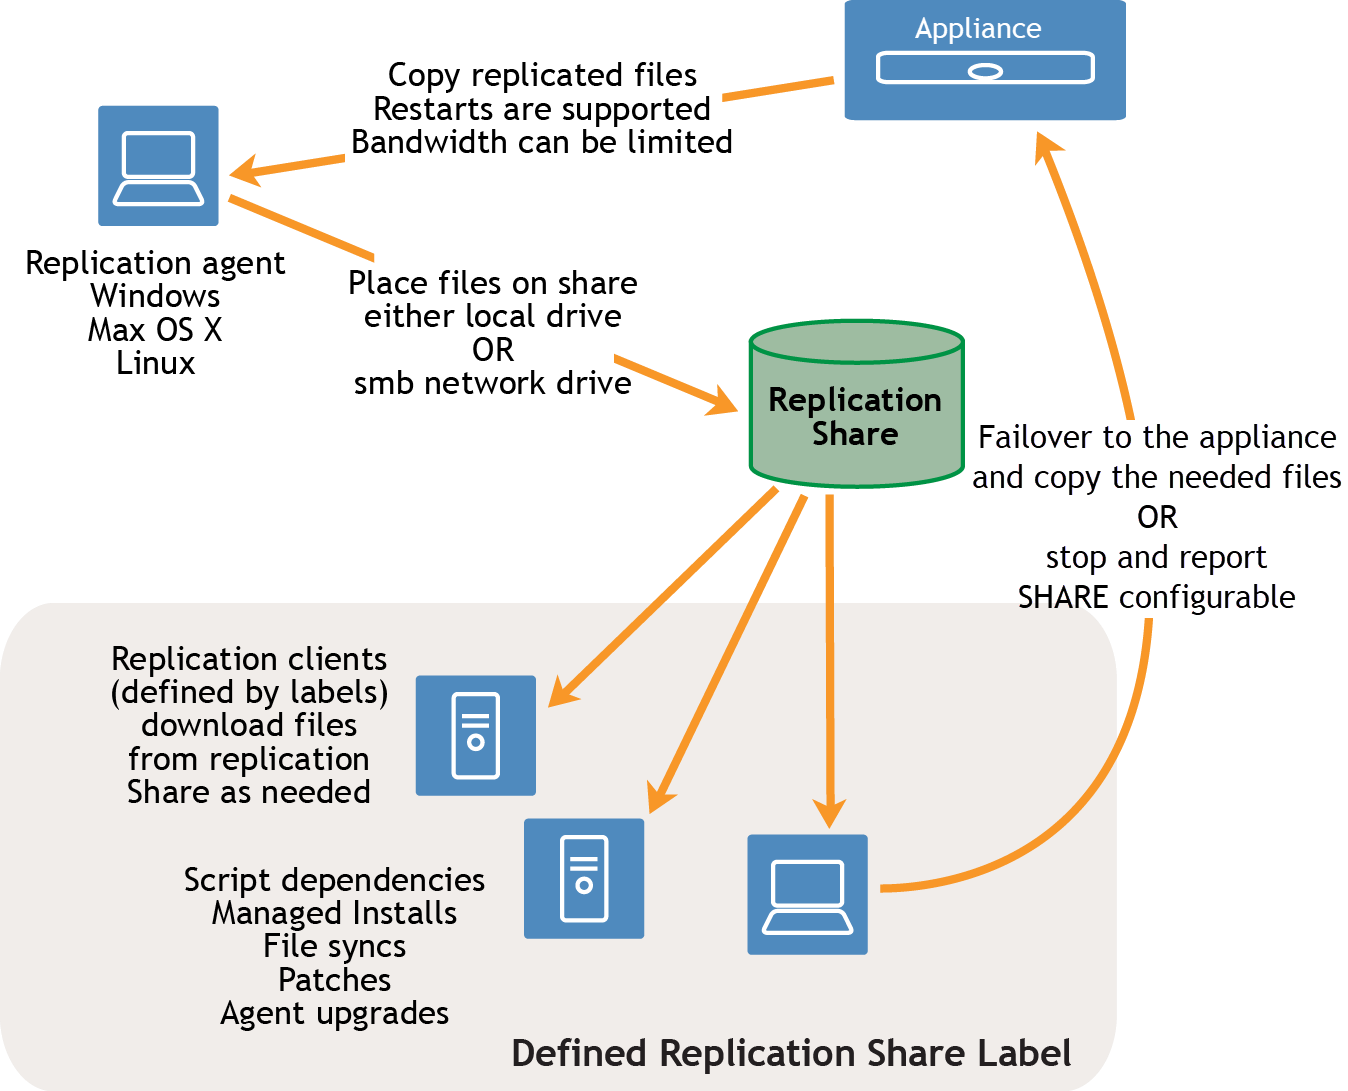 En el flujo de tareas, una flecha va de un dispositivo a un agente de replicación. La flecha tiene una etiqueta que dice "Copiar archivos de replicación". Se admiten los reinicios. El ancho de banda puede estar limitado. El agente de replicación puede ser ejecutado en un dispositivo con Windows, con Mac OS X o con Linux. Una flecha va desde el agente de replicación a los recursos compartidos de replicación. La etiqueta dice lo siguiente: "Colocar el archivo en el recurso, ya sea una unidad local o una unidad de red SMB". Desde el recurso compartido de replicación, las flechas se dirigen a varios clientes de replicación que están definidos por una etiqueta de recurso compartido de replicación.